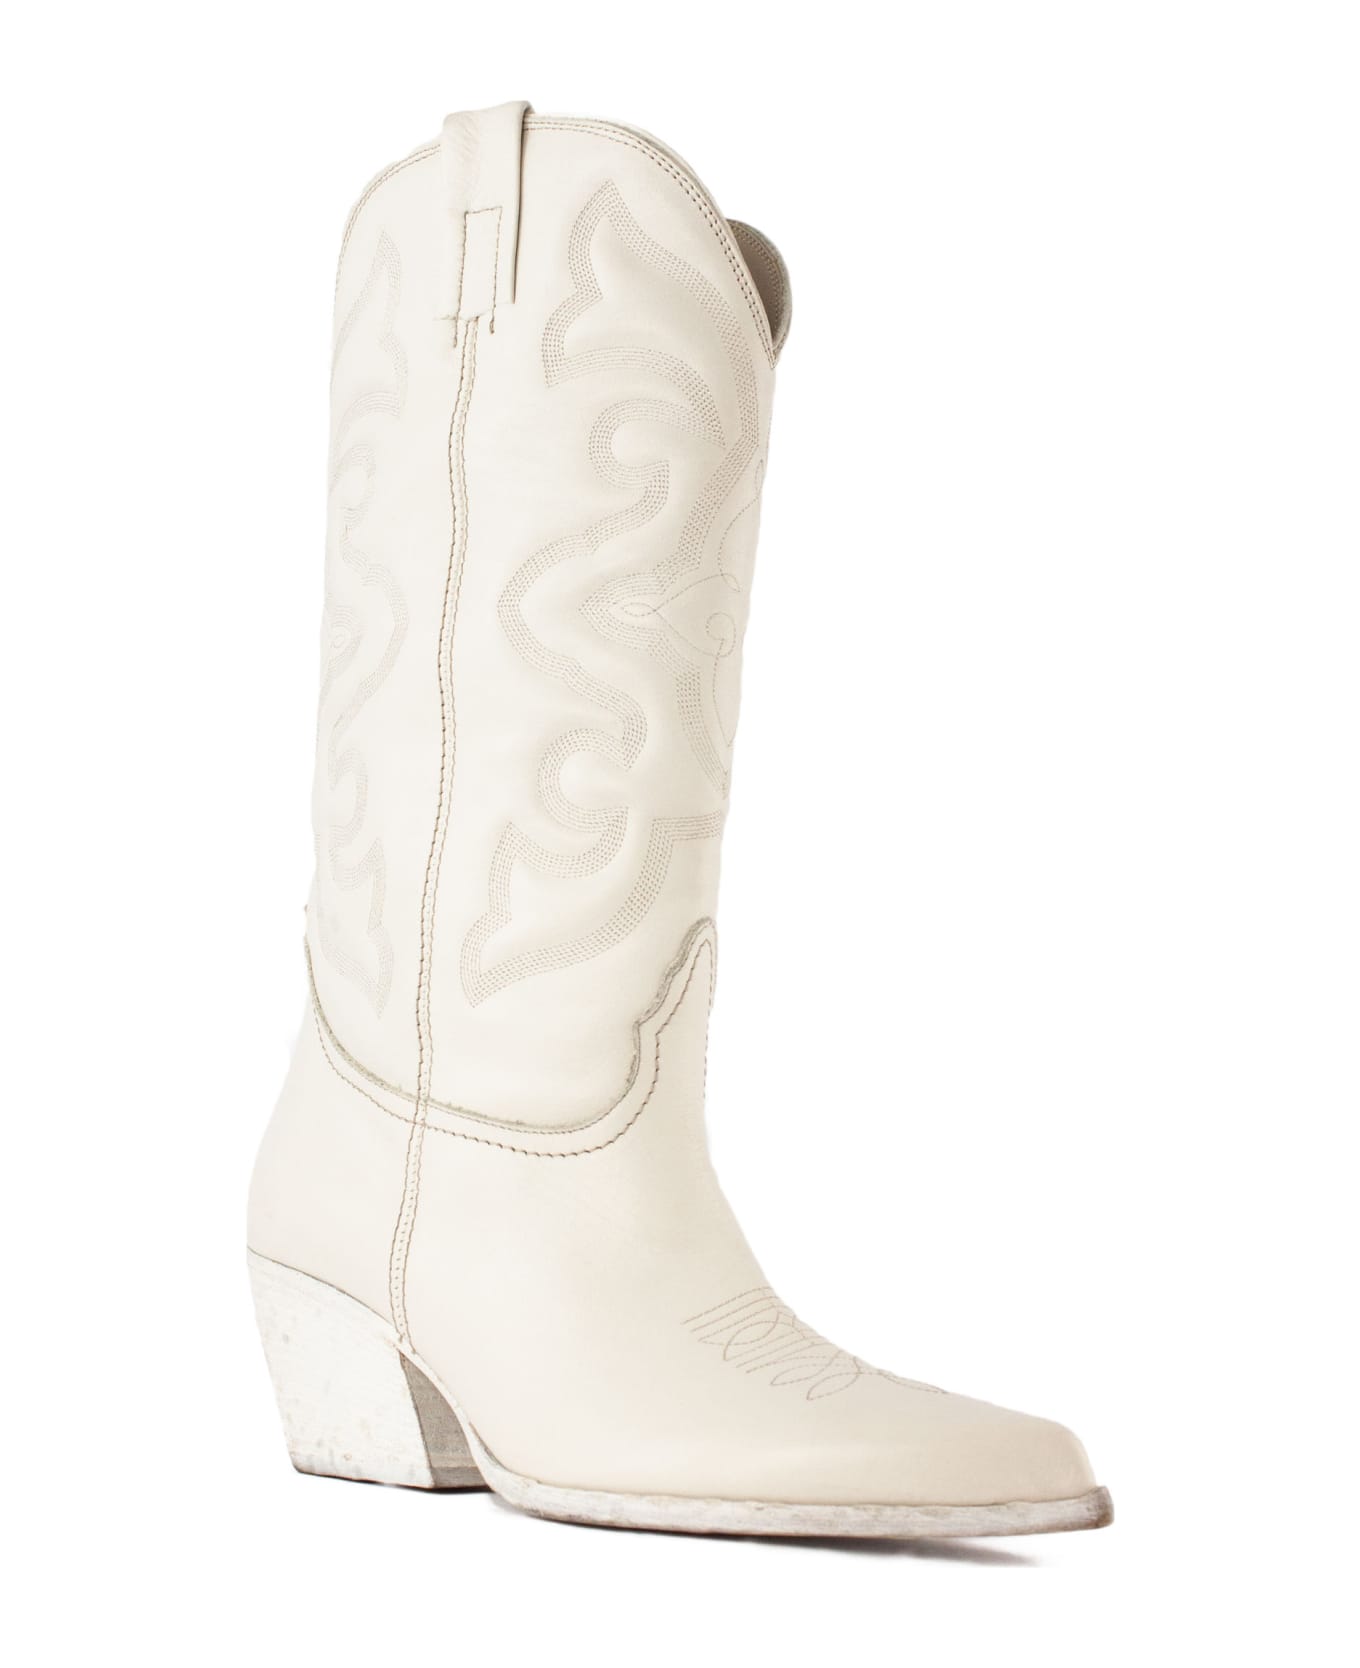 Elena Iachi White Leather Texan Boots - White